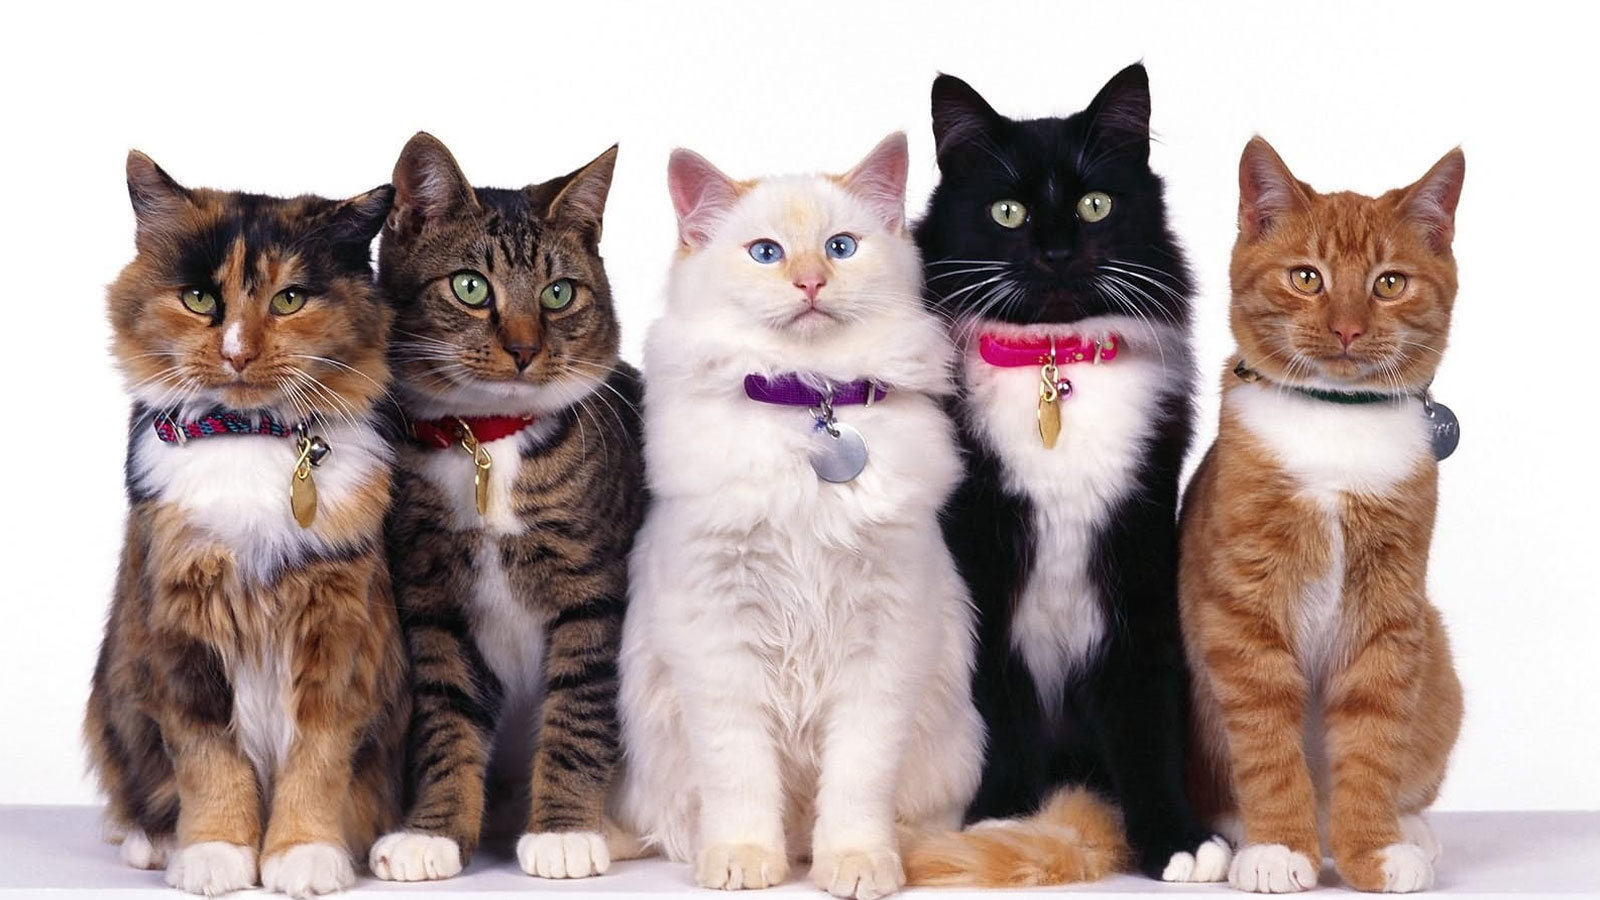 Evde kedi beslemenin faydaları neler? Evde kedi beslemenin zararları var mı?